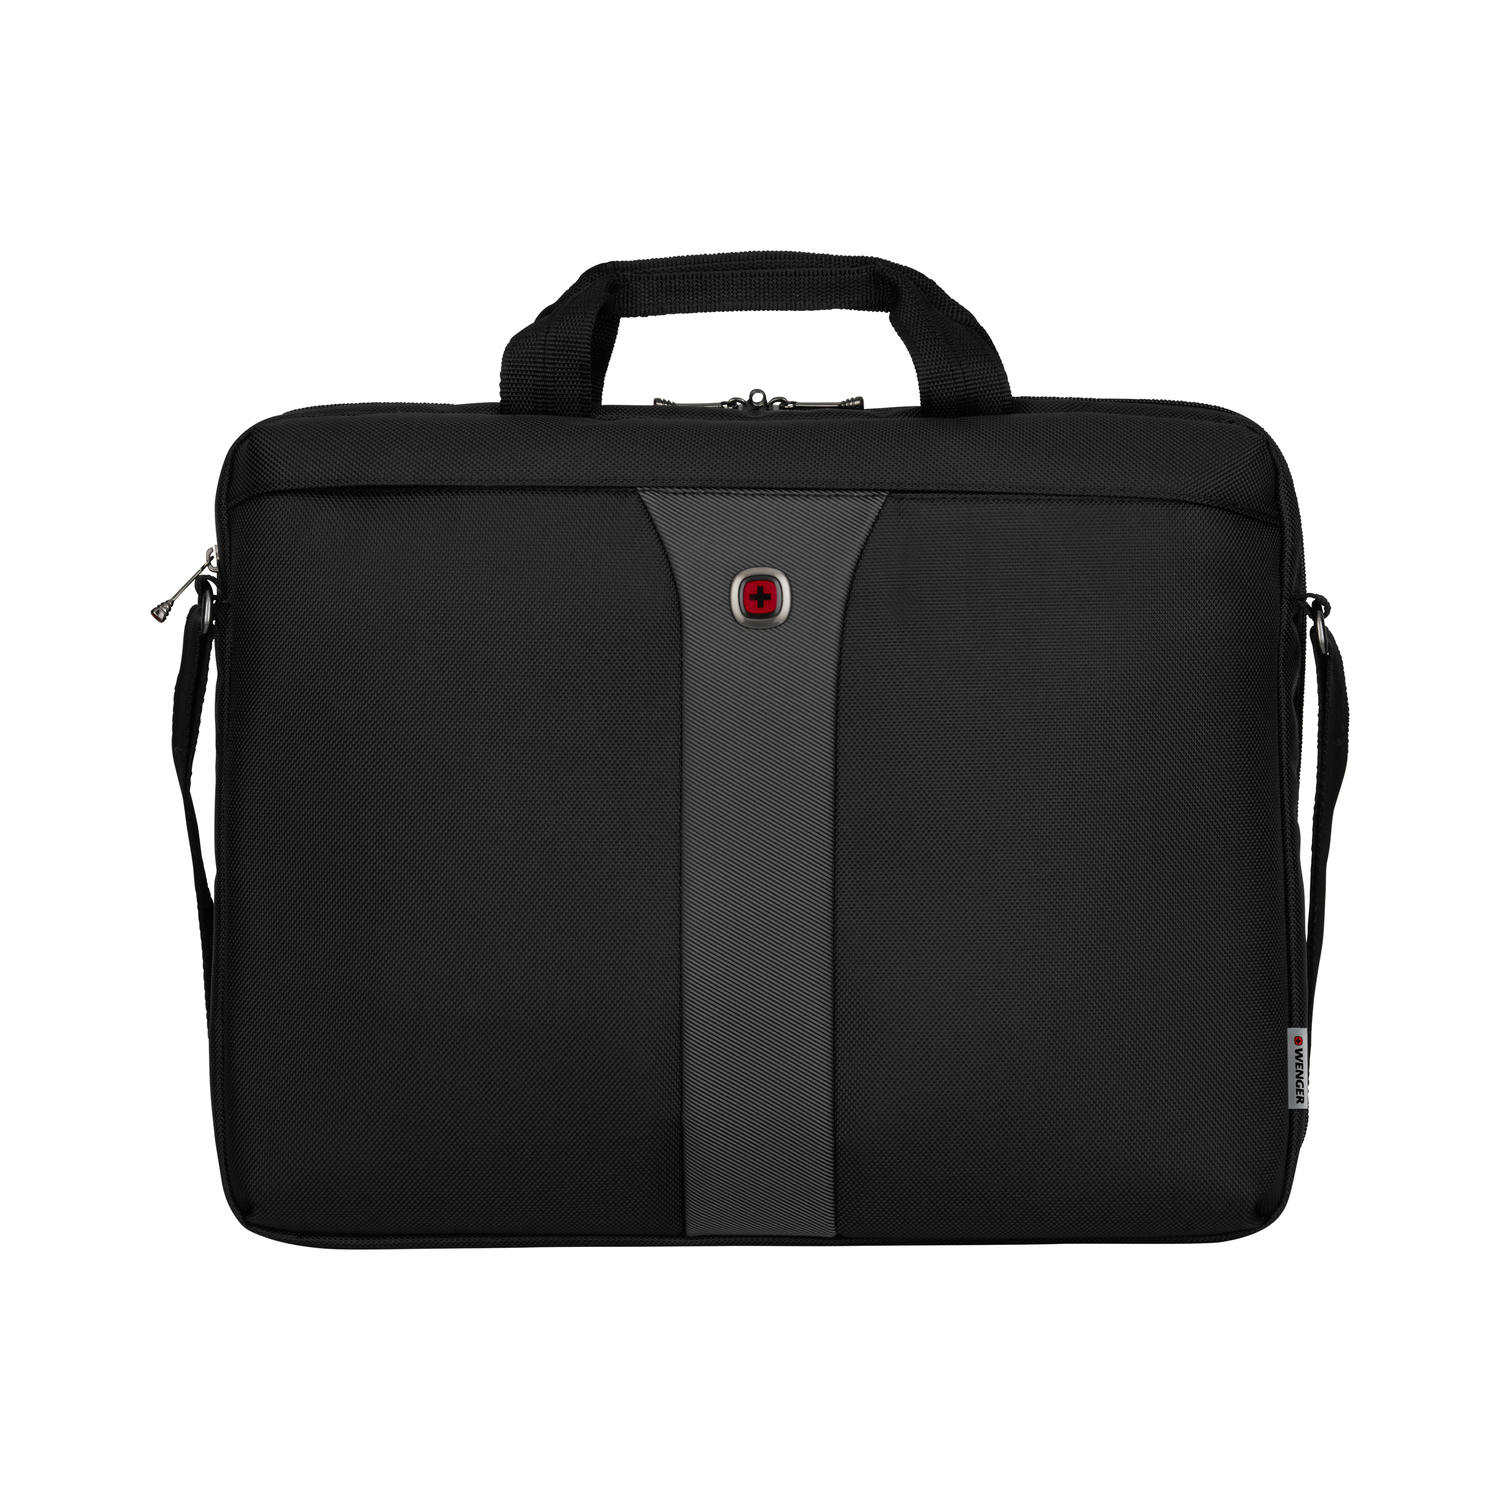 Wenger Legacy Laptoptasche 17 Zoll schwarz | jetzt online kaufen auf Koffer.de  ✓